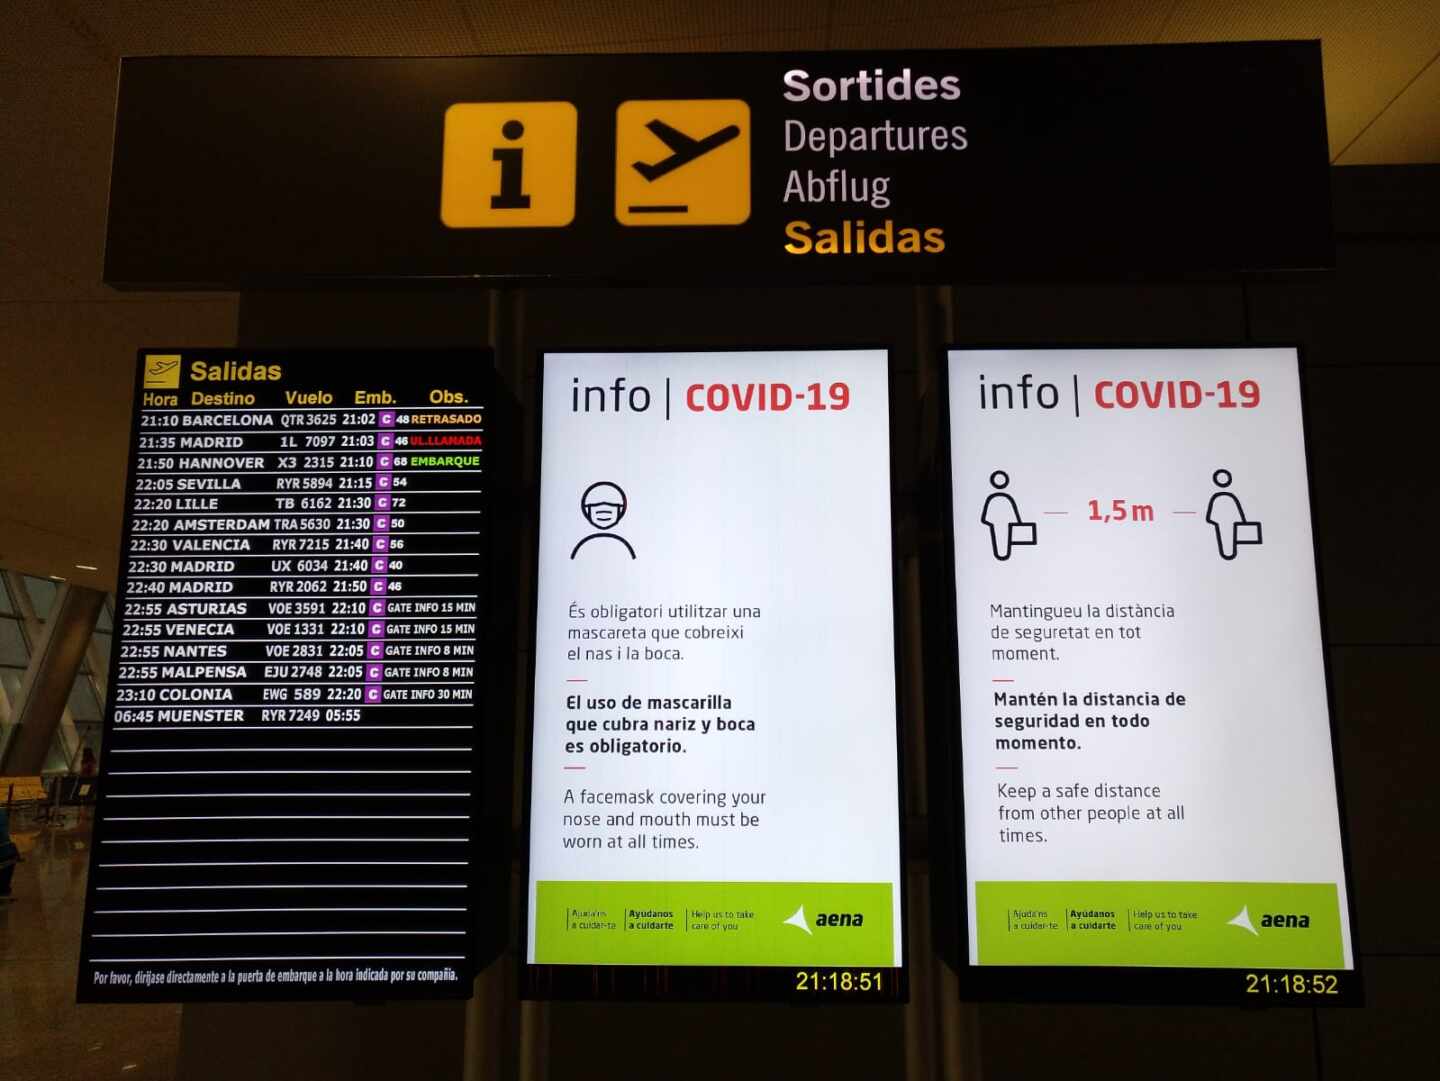 Carteles informativos sobre medidas anti-Covid en el aeropuerto de Mallorca.